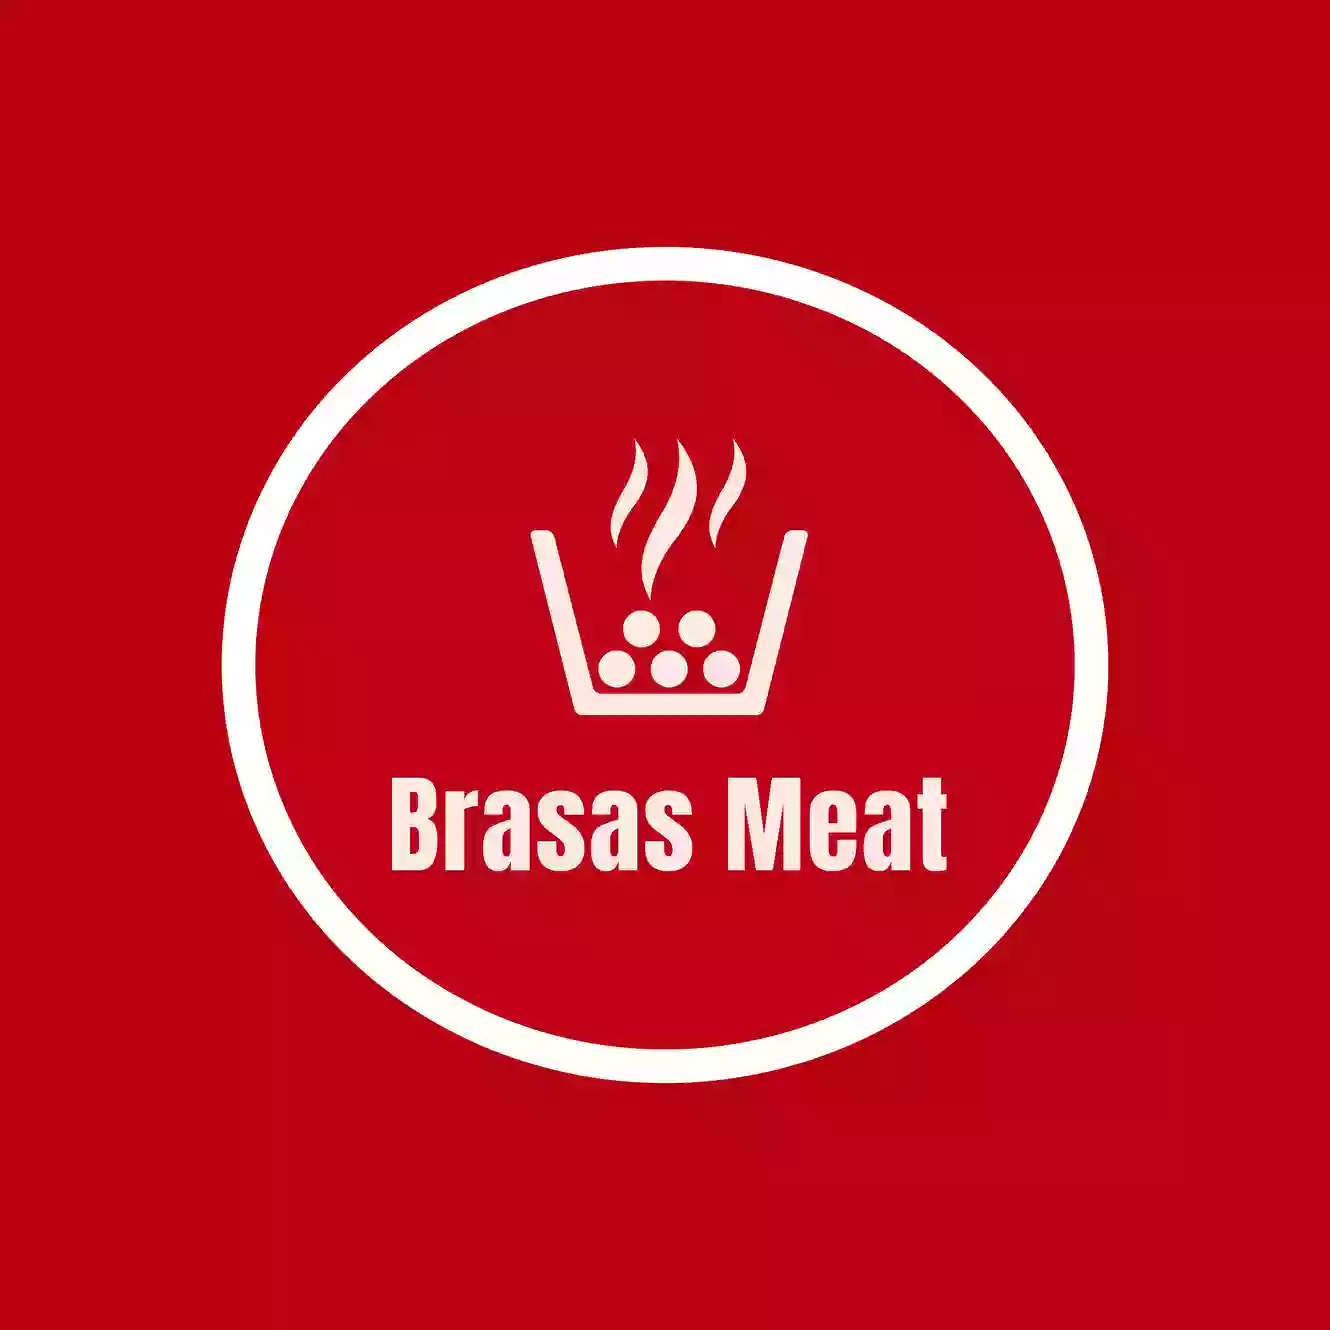 Brasas Meat